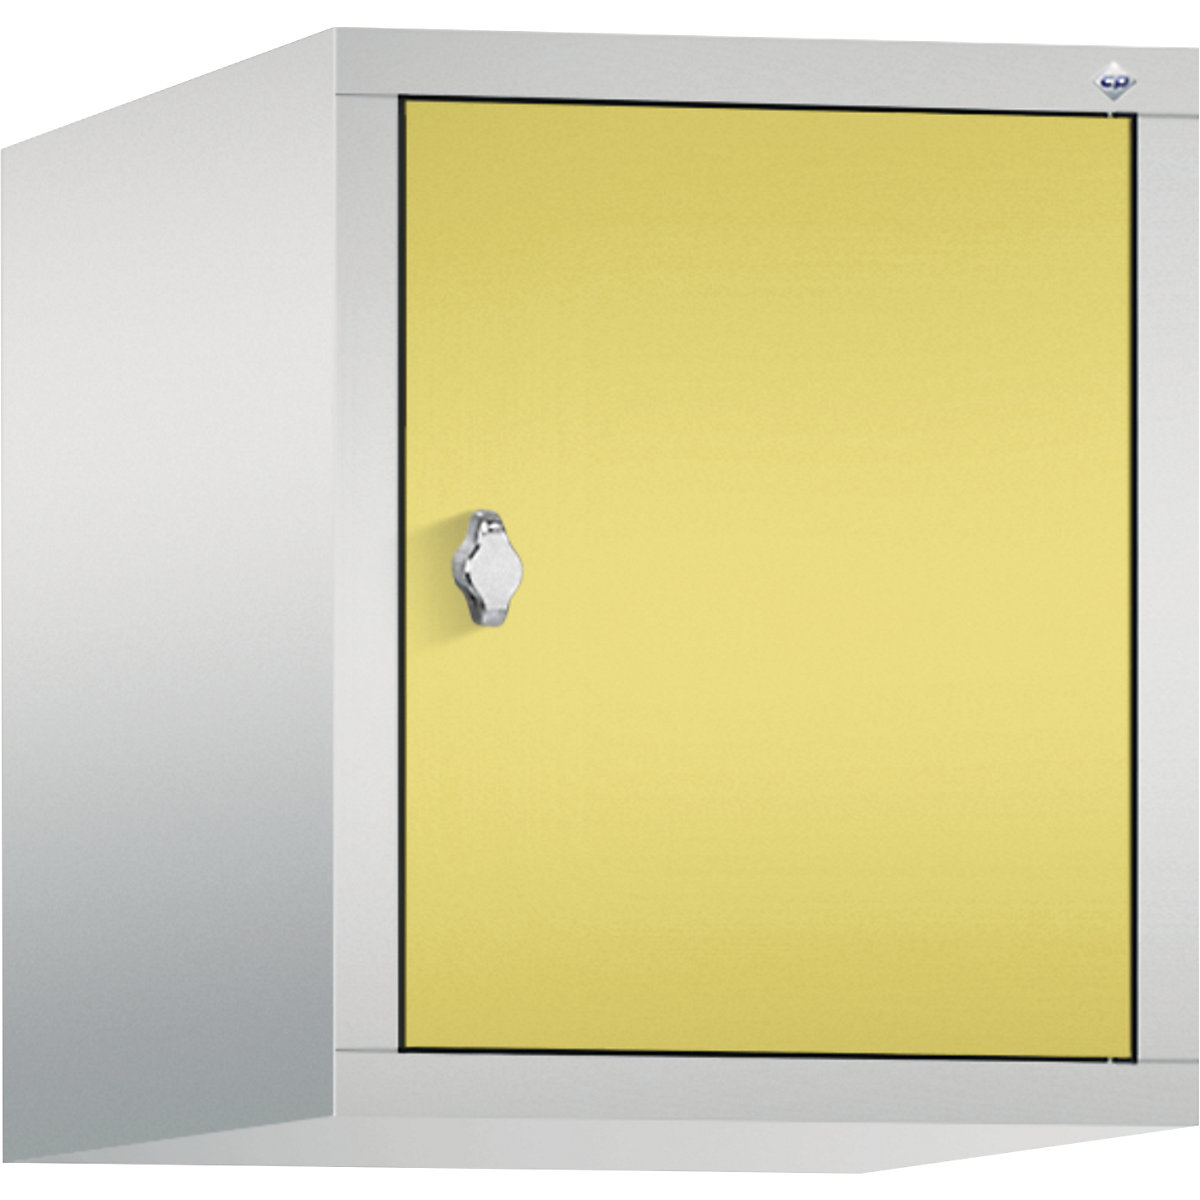 C+P – Altillo CLASSIC, 1 compartimento, anchura de compartimento 400 mm, gris luminoso / amarillo azufre